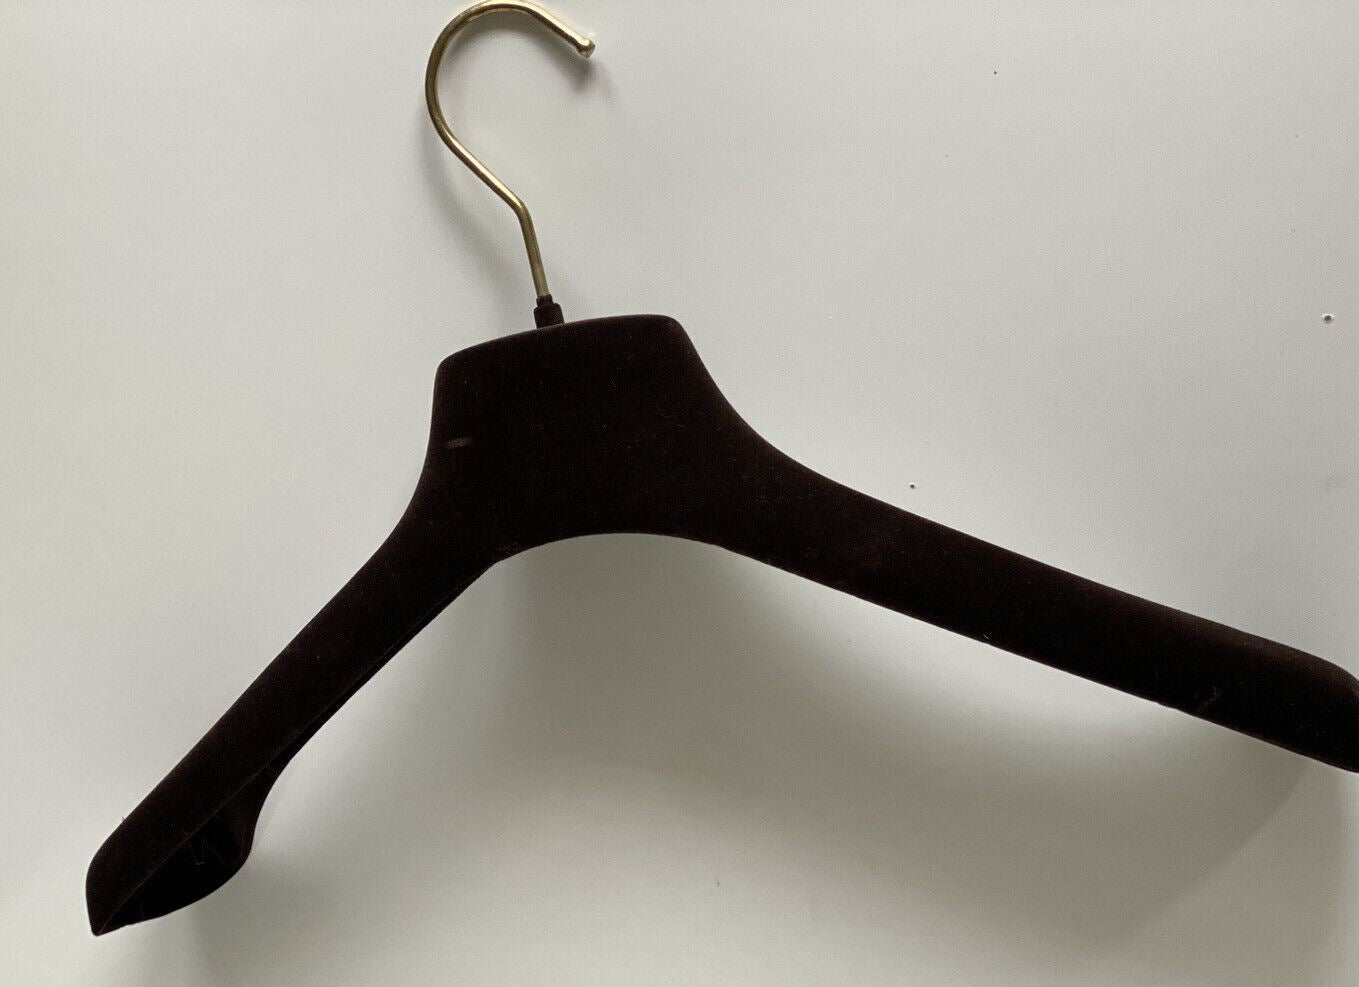 Коричневые бархатные вешалки для свитера с золотой фурнитурой Bottega Veneta 15,6x7x2,5 